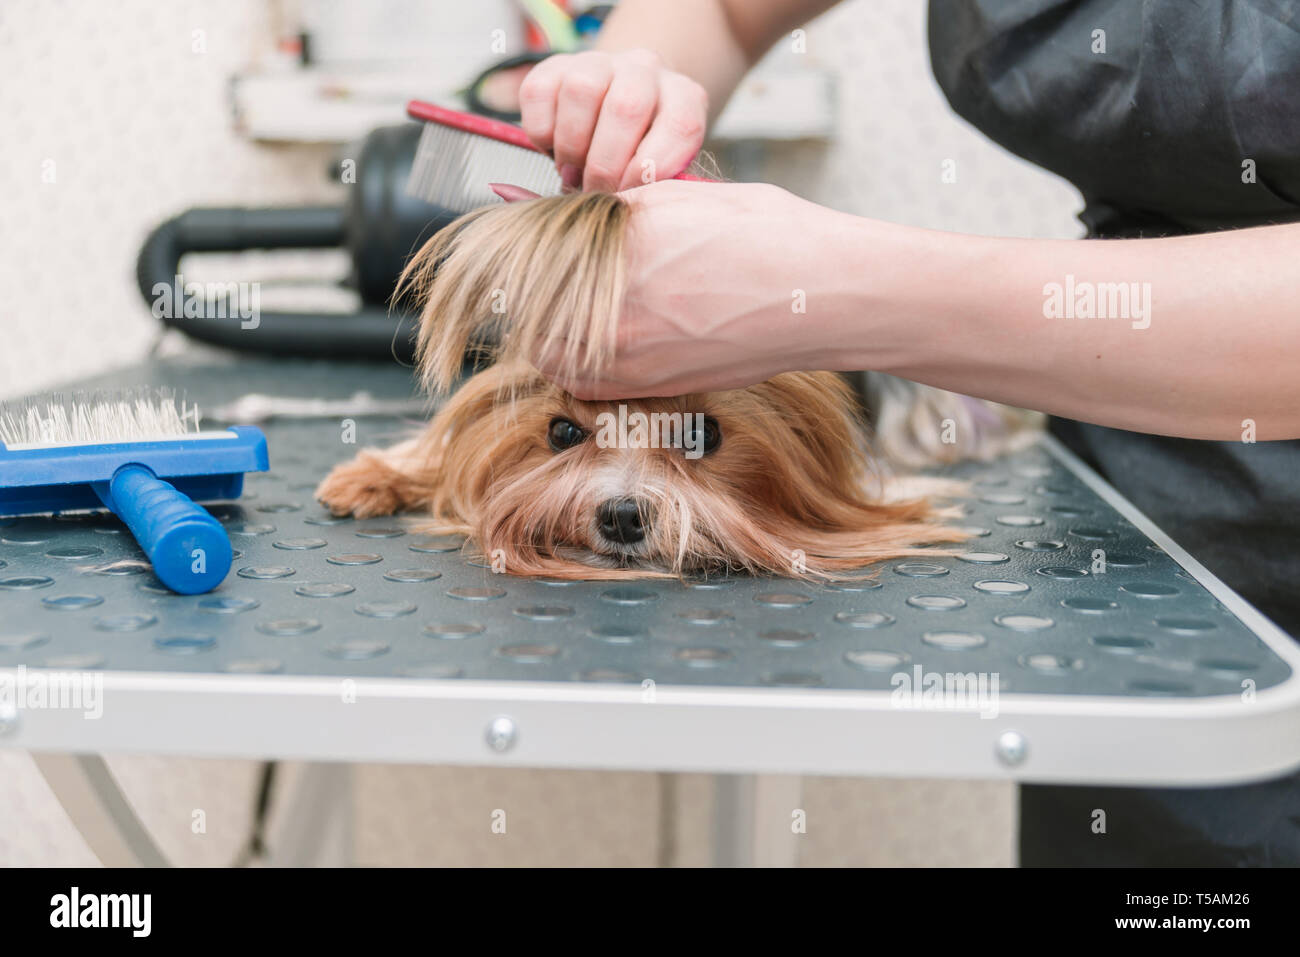 Groomer kämmen cute Yorkshire Terrier mit Kamm auf dem Tisch  Stockfotografie - Alamy